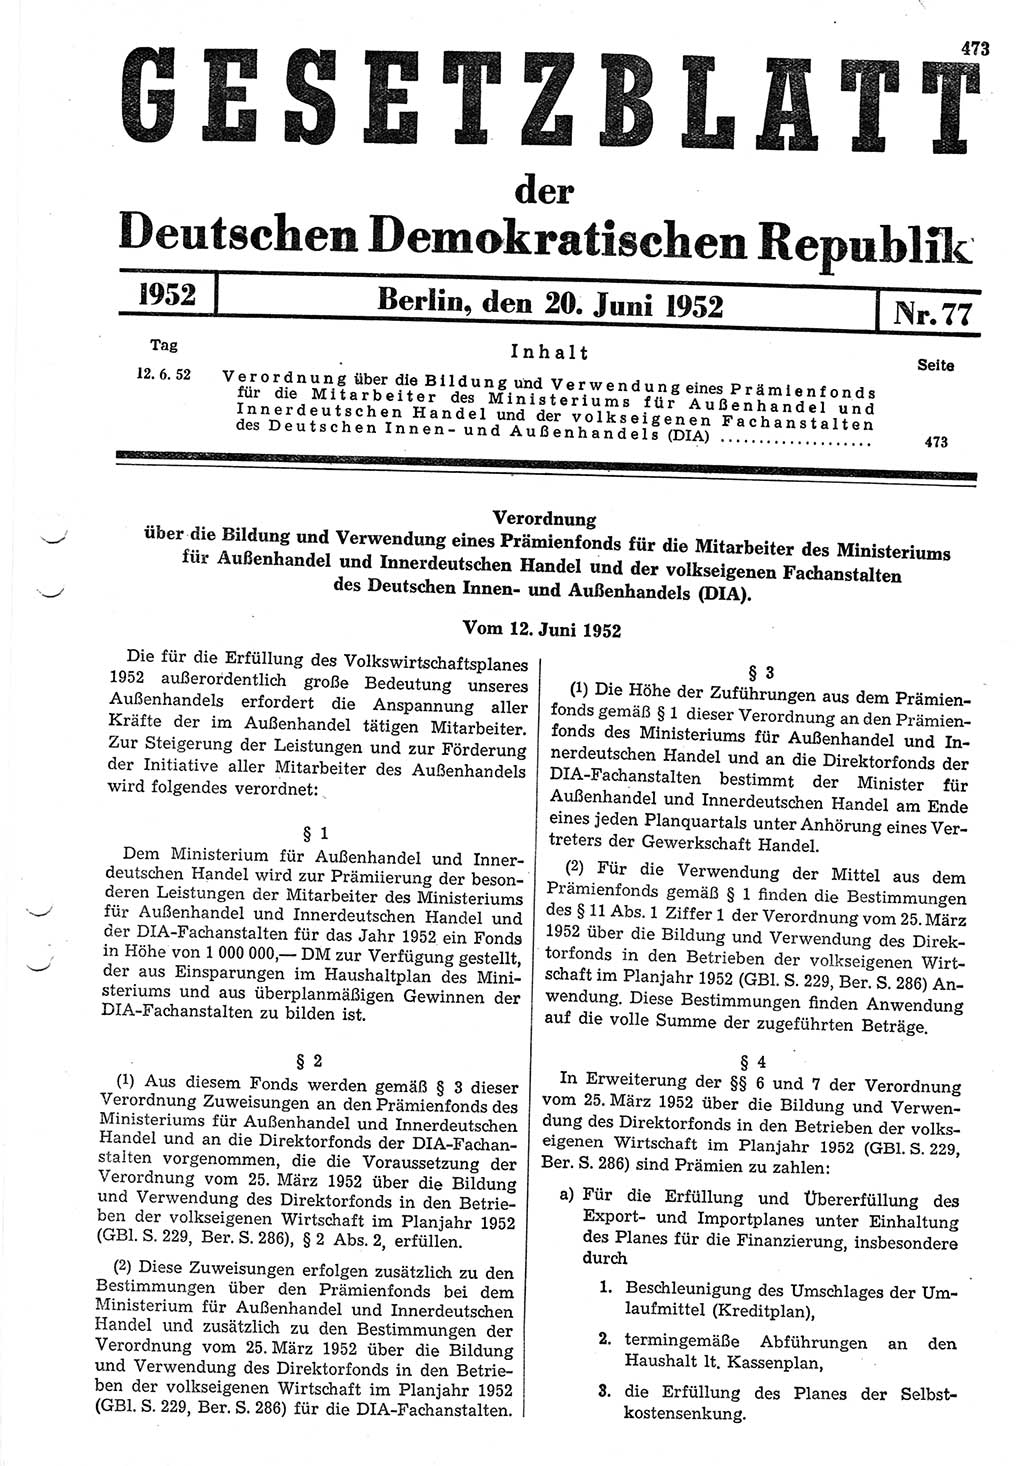 Gesetzblatt (GBl.) der Deutschen Demokratischen Republik (DDR) 1952, Seite 473 (GBl. DDR 1952, S. 473)